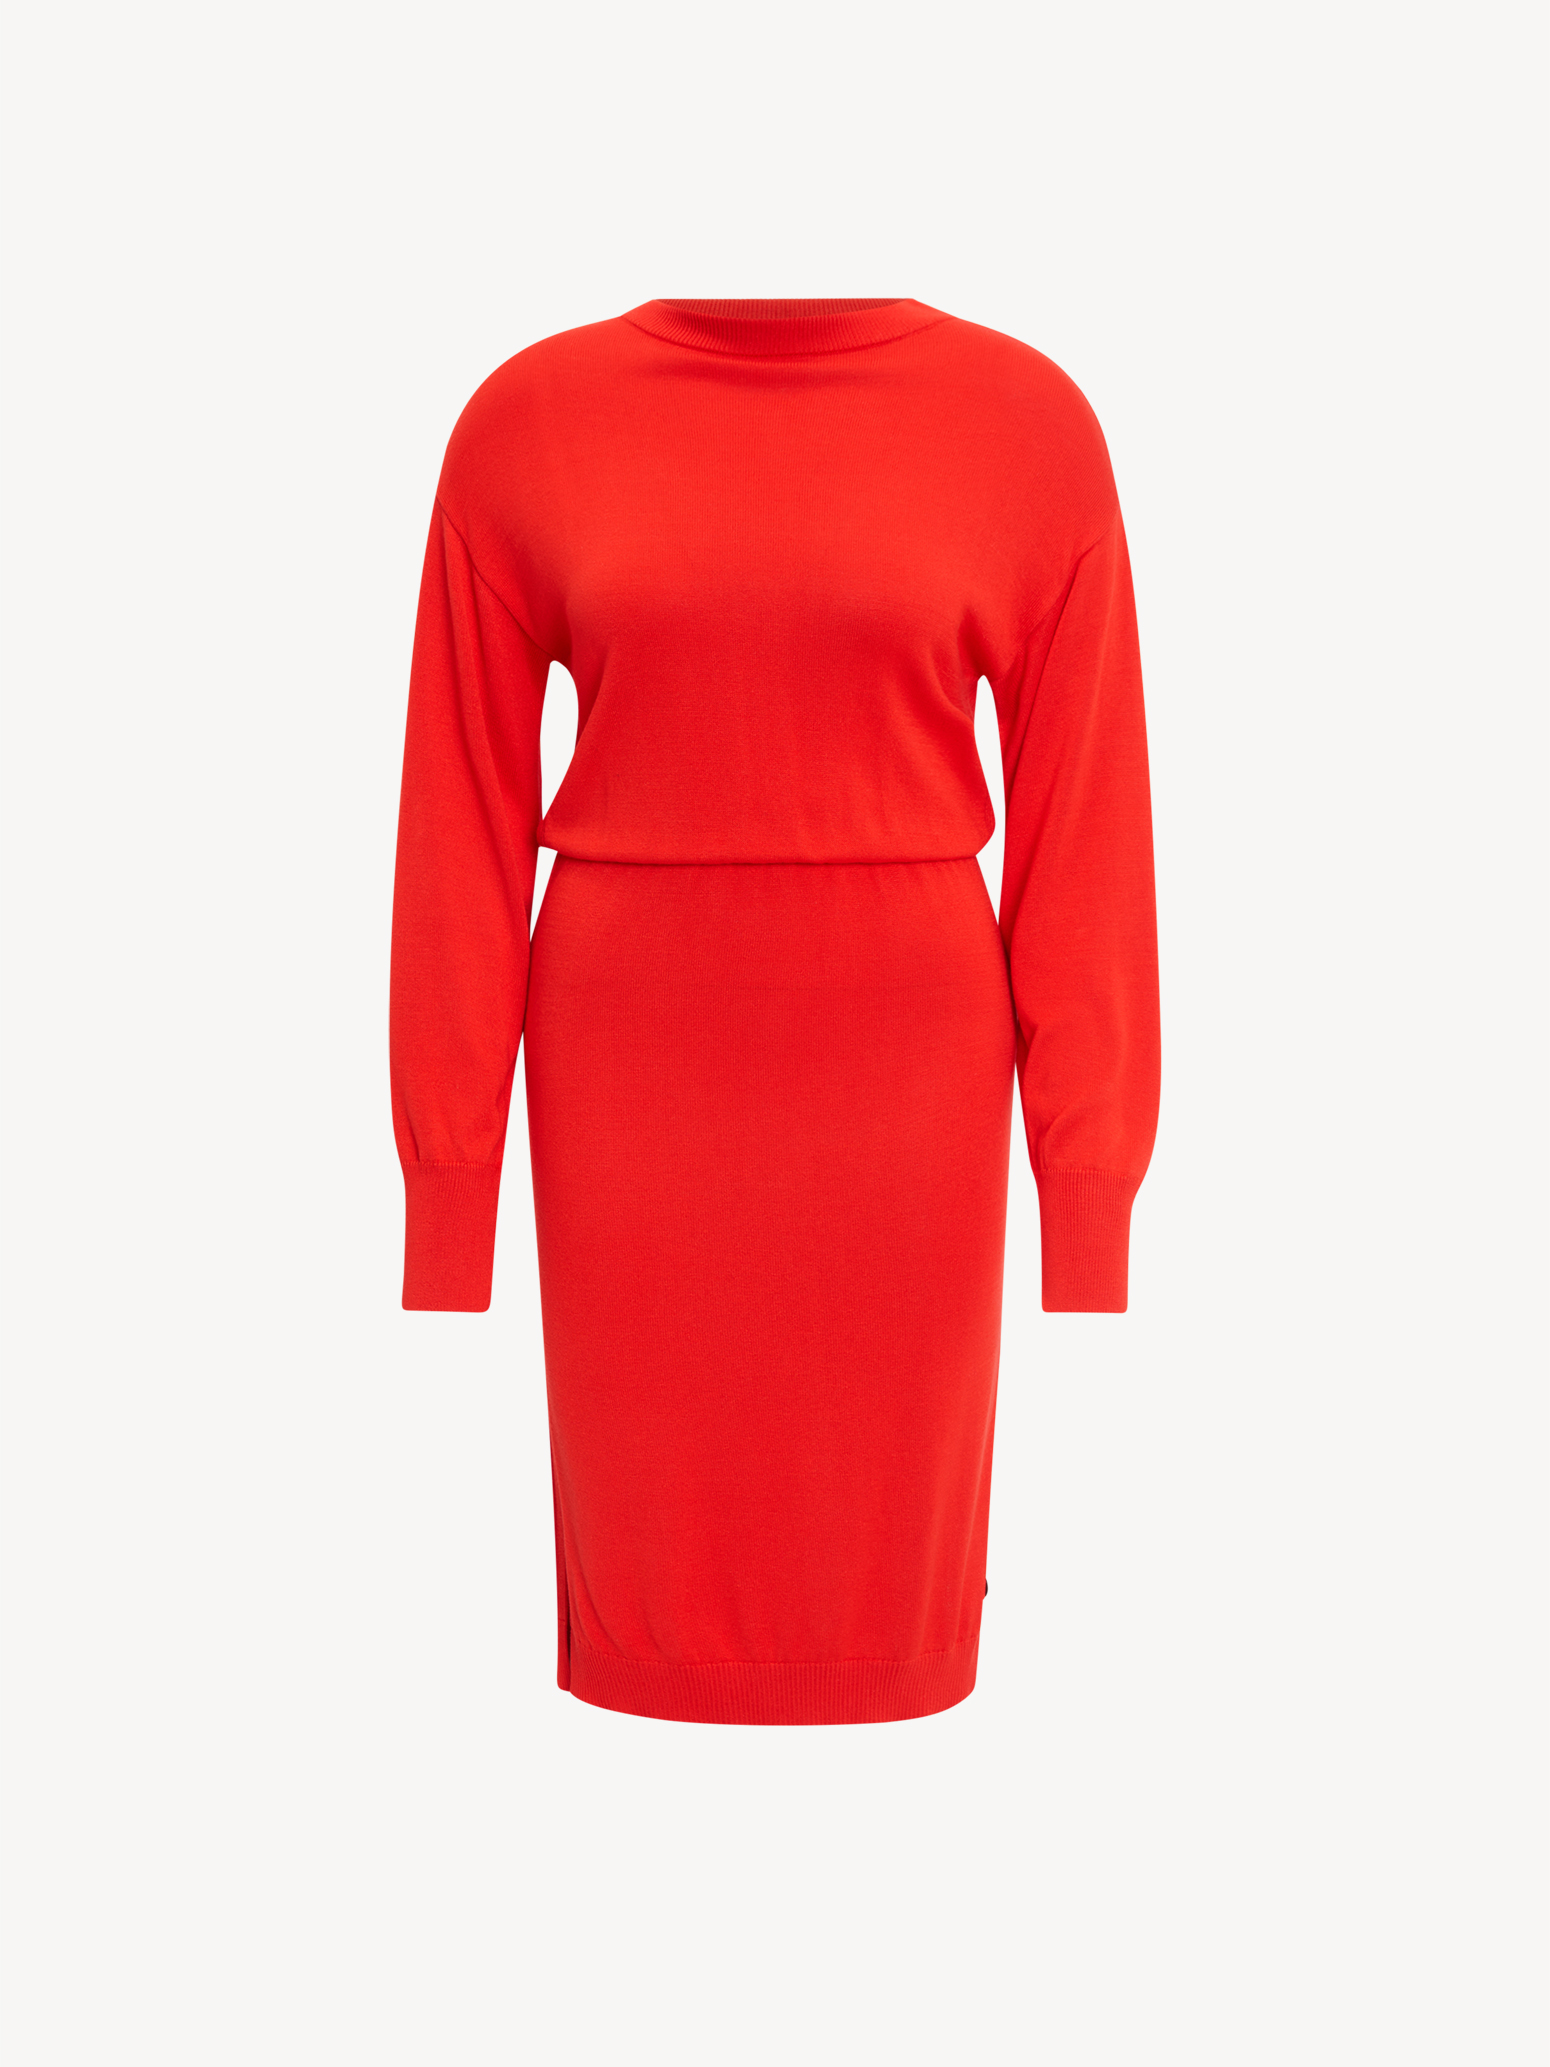 Kleid - rot TAW0329-30042: Kleider Röcke online Tamaris & kaufen